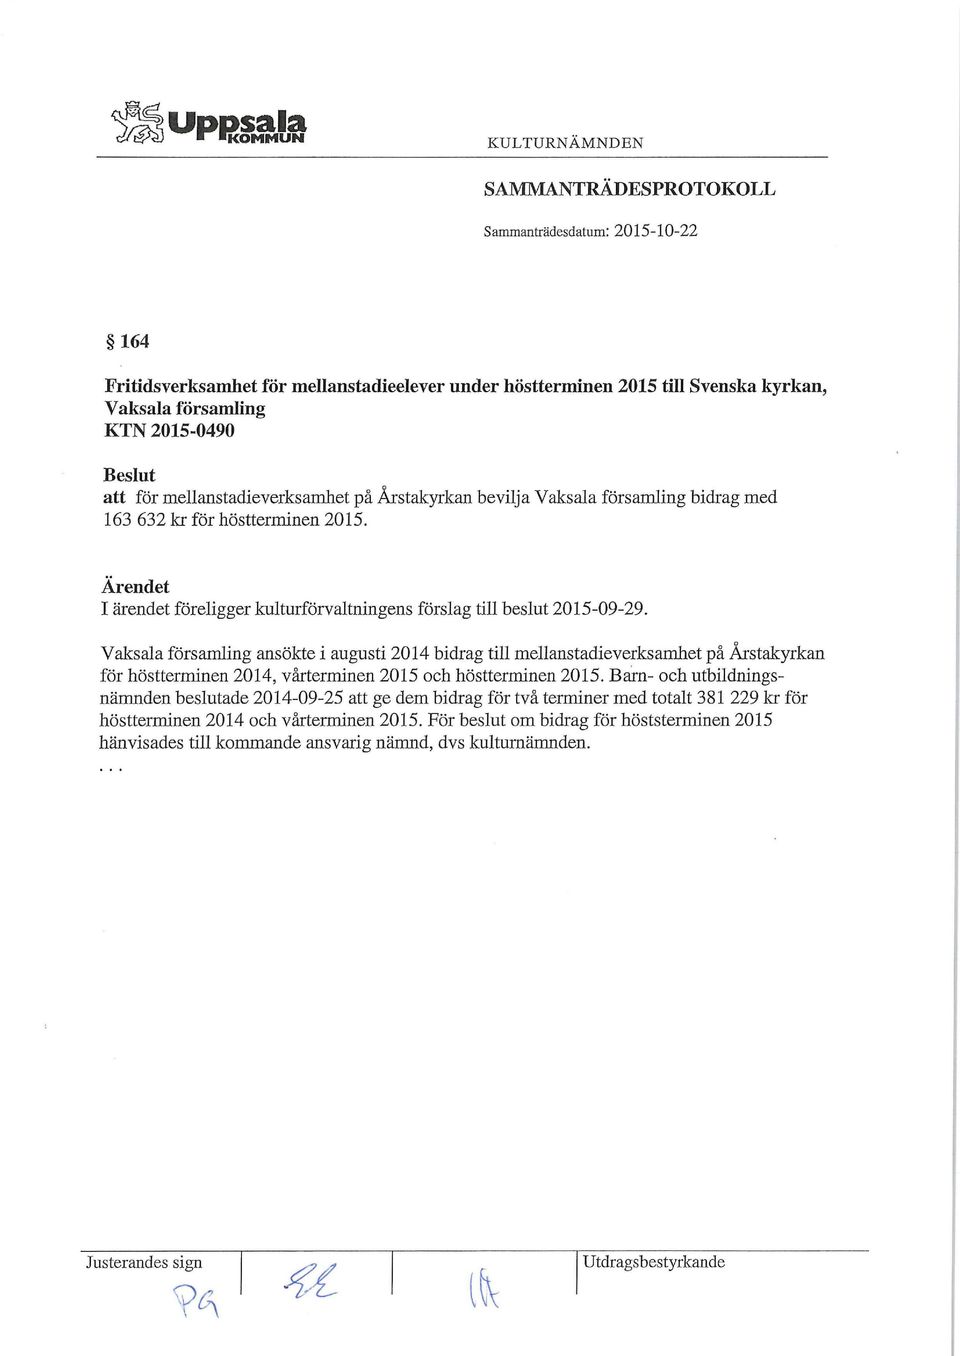 Vaksala församling ansökte i augusti 2014 bidrag till mellanstadieverksamhet på Årstakyrkan för höstterminen 2014, vårterminen 2015 och höstterminen 2015.